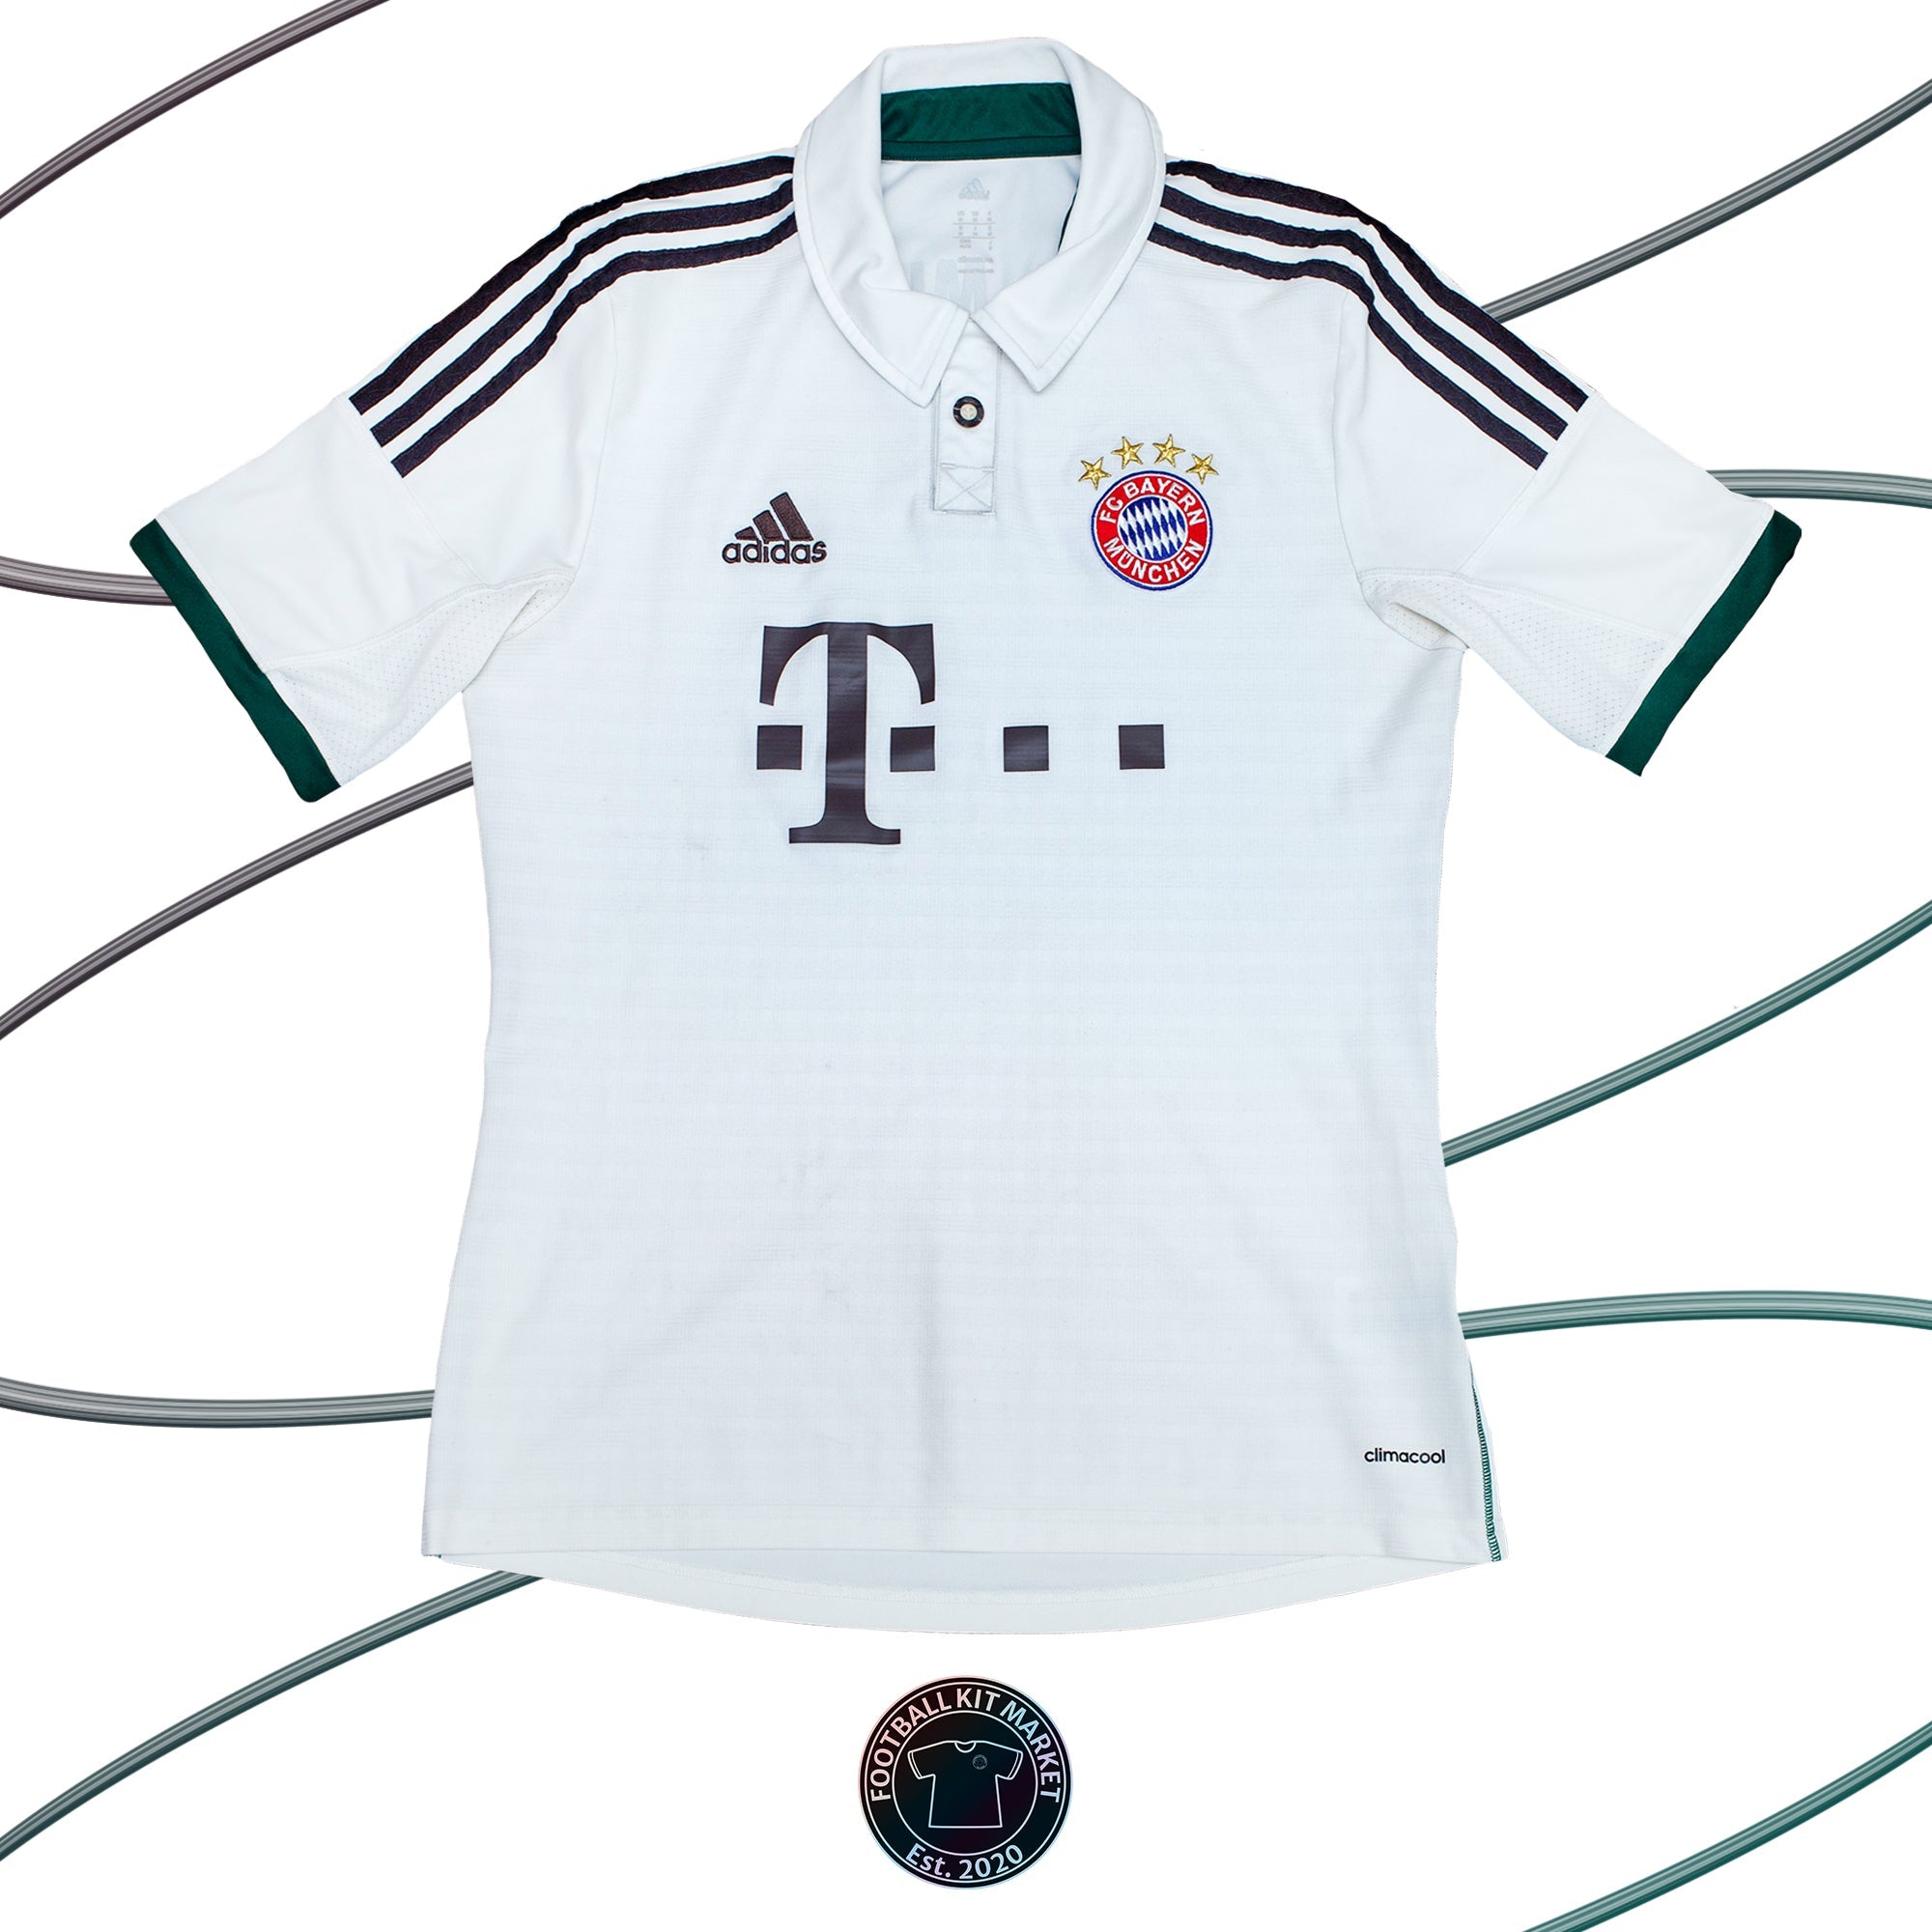 Genuine BAYERN MUNICH Away Shirt (2013-2014) - ADIDAS (M) - Product Image from Football Kit Market